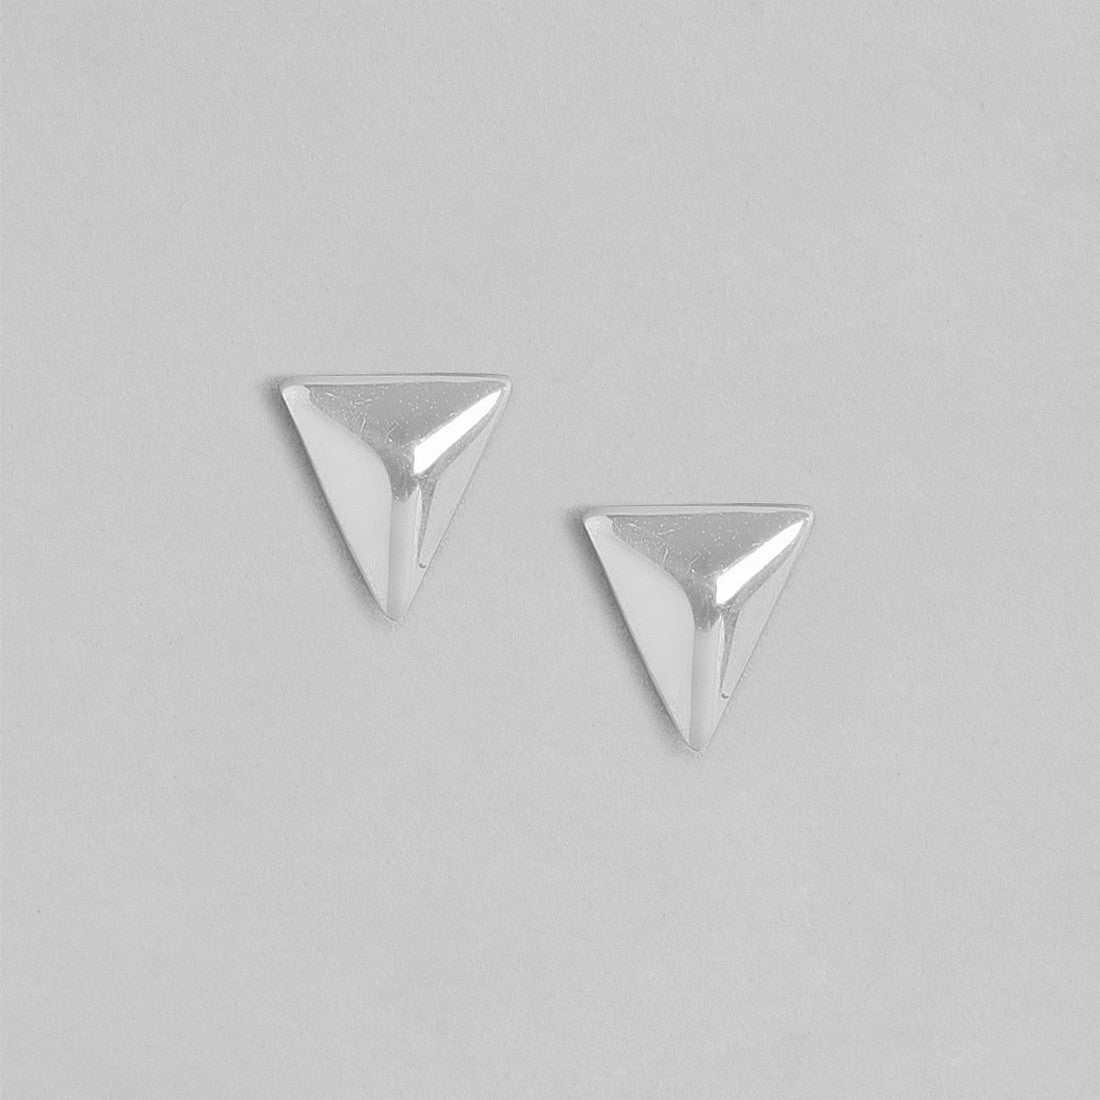 Minimalist Triangle Stud Earrings in 925 Sterling Silver